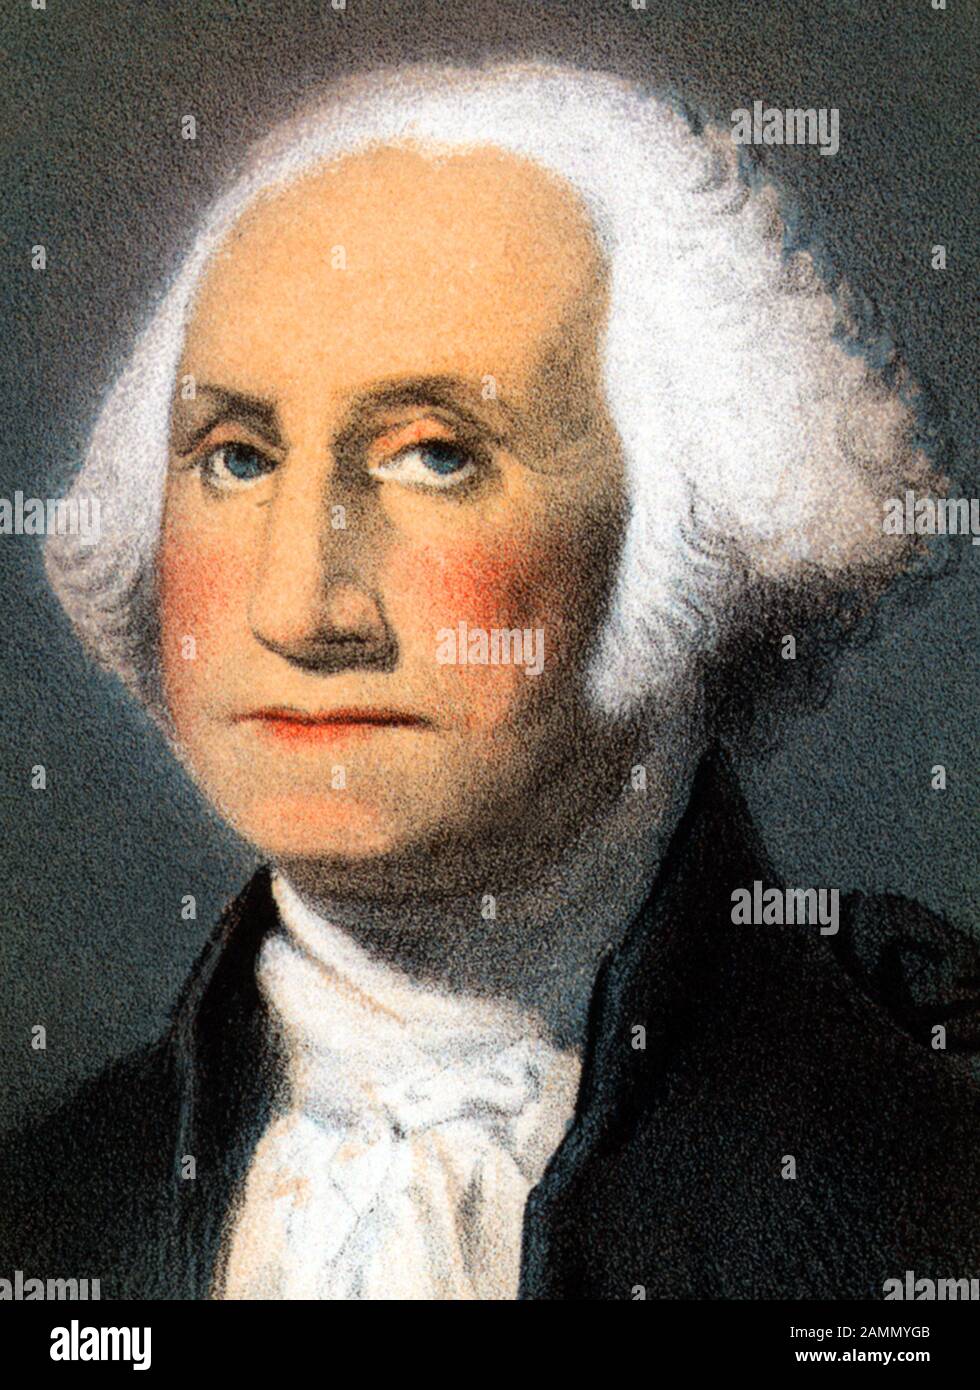 Ritratto d'epoca di George Washington (1732 - 1799) – Comandante dell'esercito continentale nella guerra rivoluzionaria americana / Guerra d'indipendenza (1775 - 1783) e il primo presidente degli Stati Uniti (1789 - 1797). Dettaglio da una stampa circa 1870 da Strobridge & Co di Cincinnati. Foto Stock